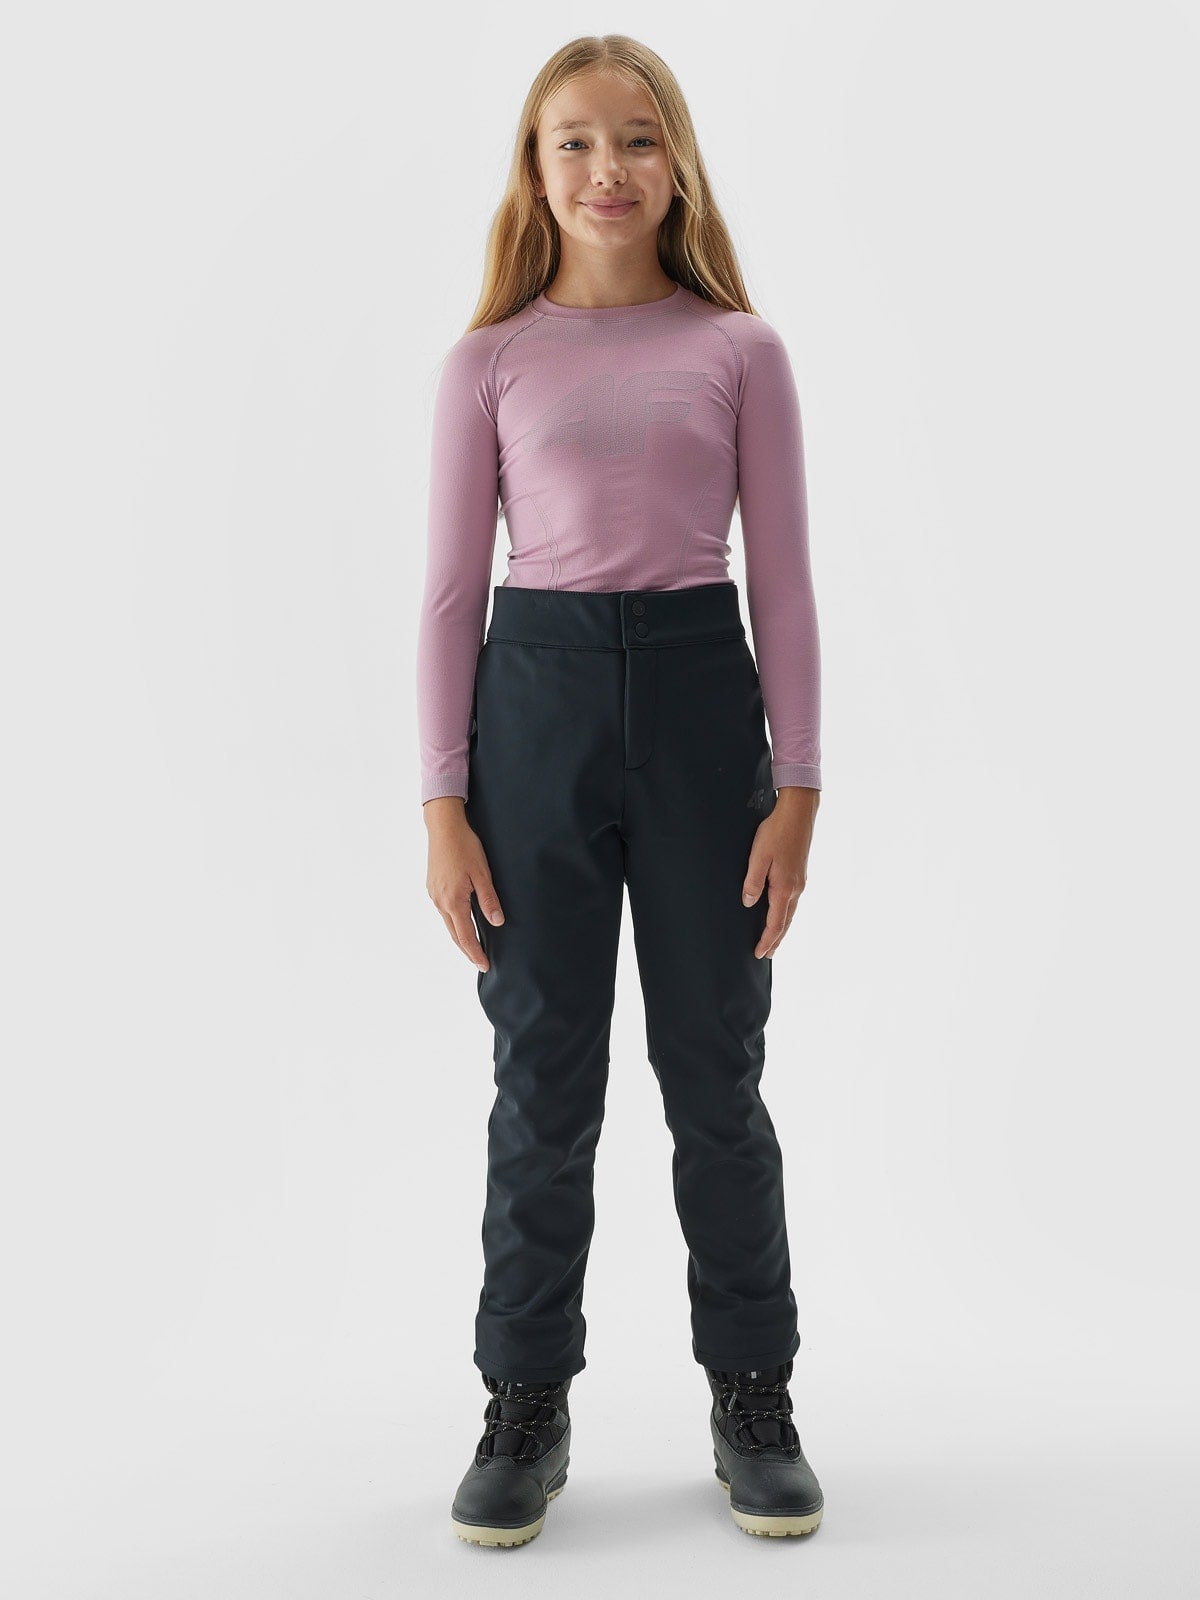 Dievčenské lyžiarske softshellové nohavice s membránou 5000 - čierne